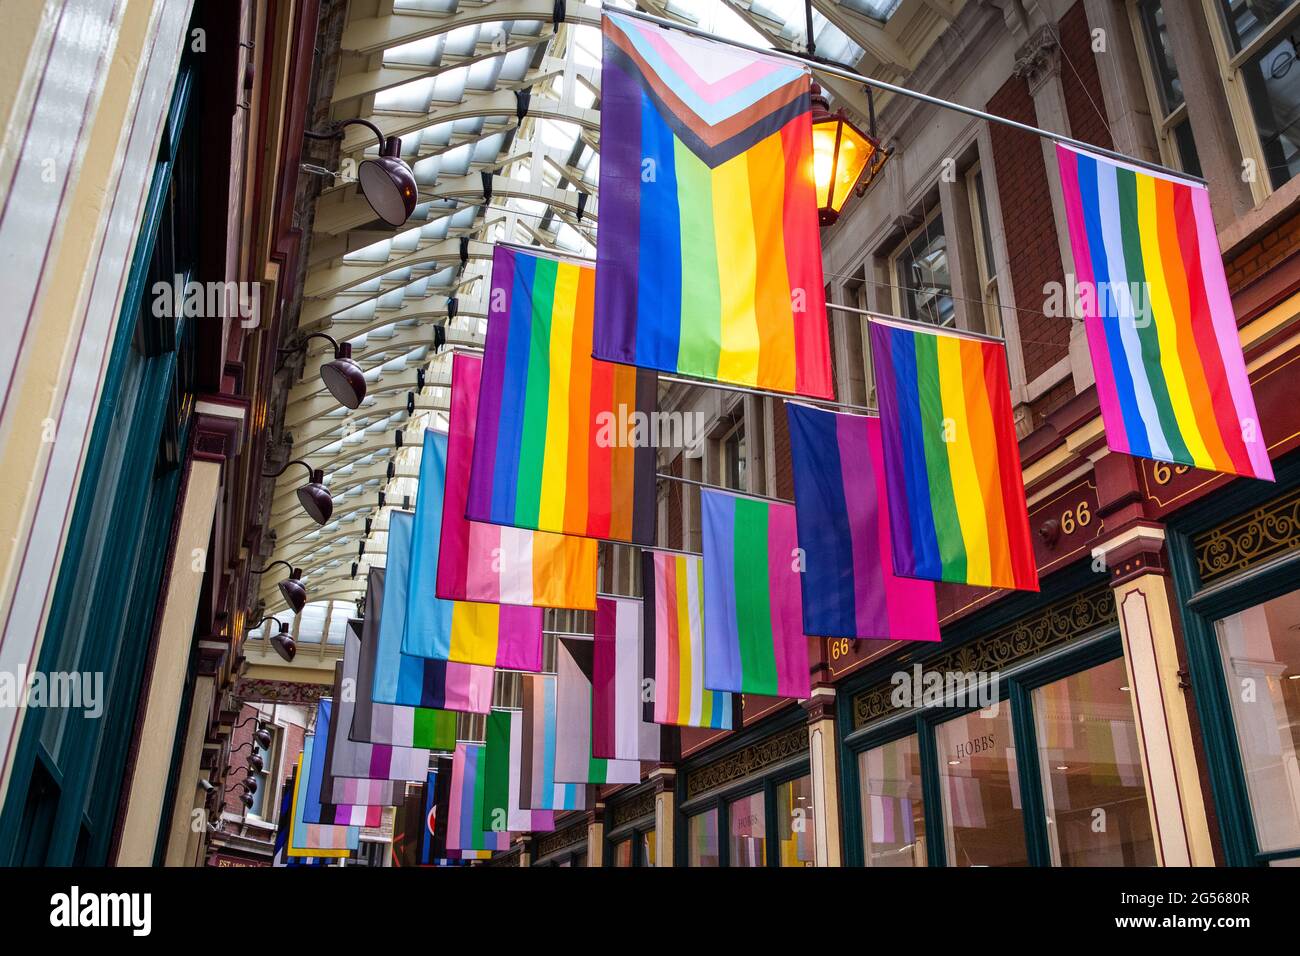 Detalle de Símbolos, una instalación de arte de Guillaume Vandome en Leadenhall Market, que consta de 30 diferentes banderas queer/LGBT+ Foto de stock